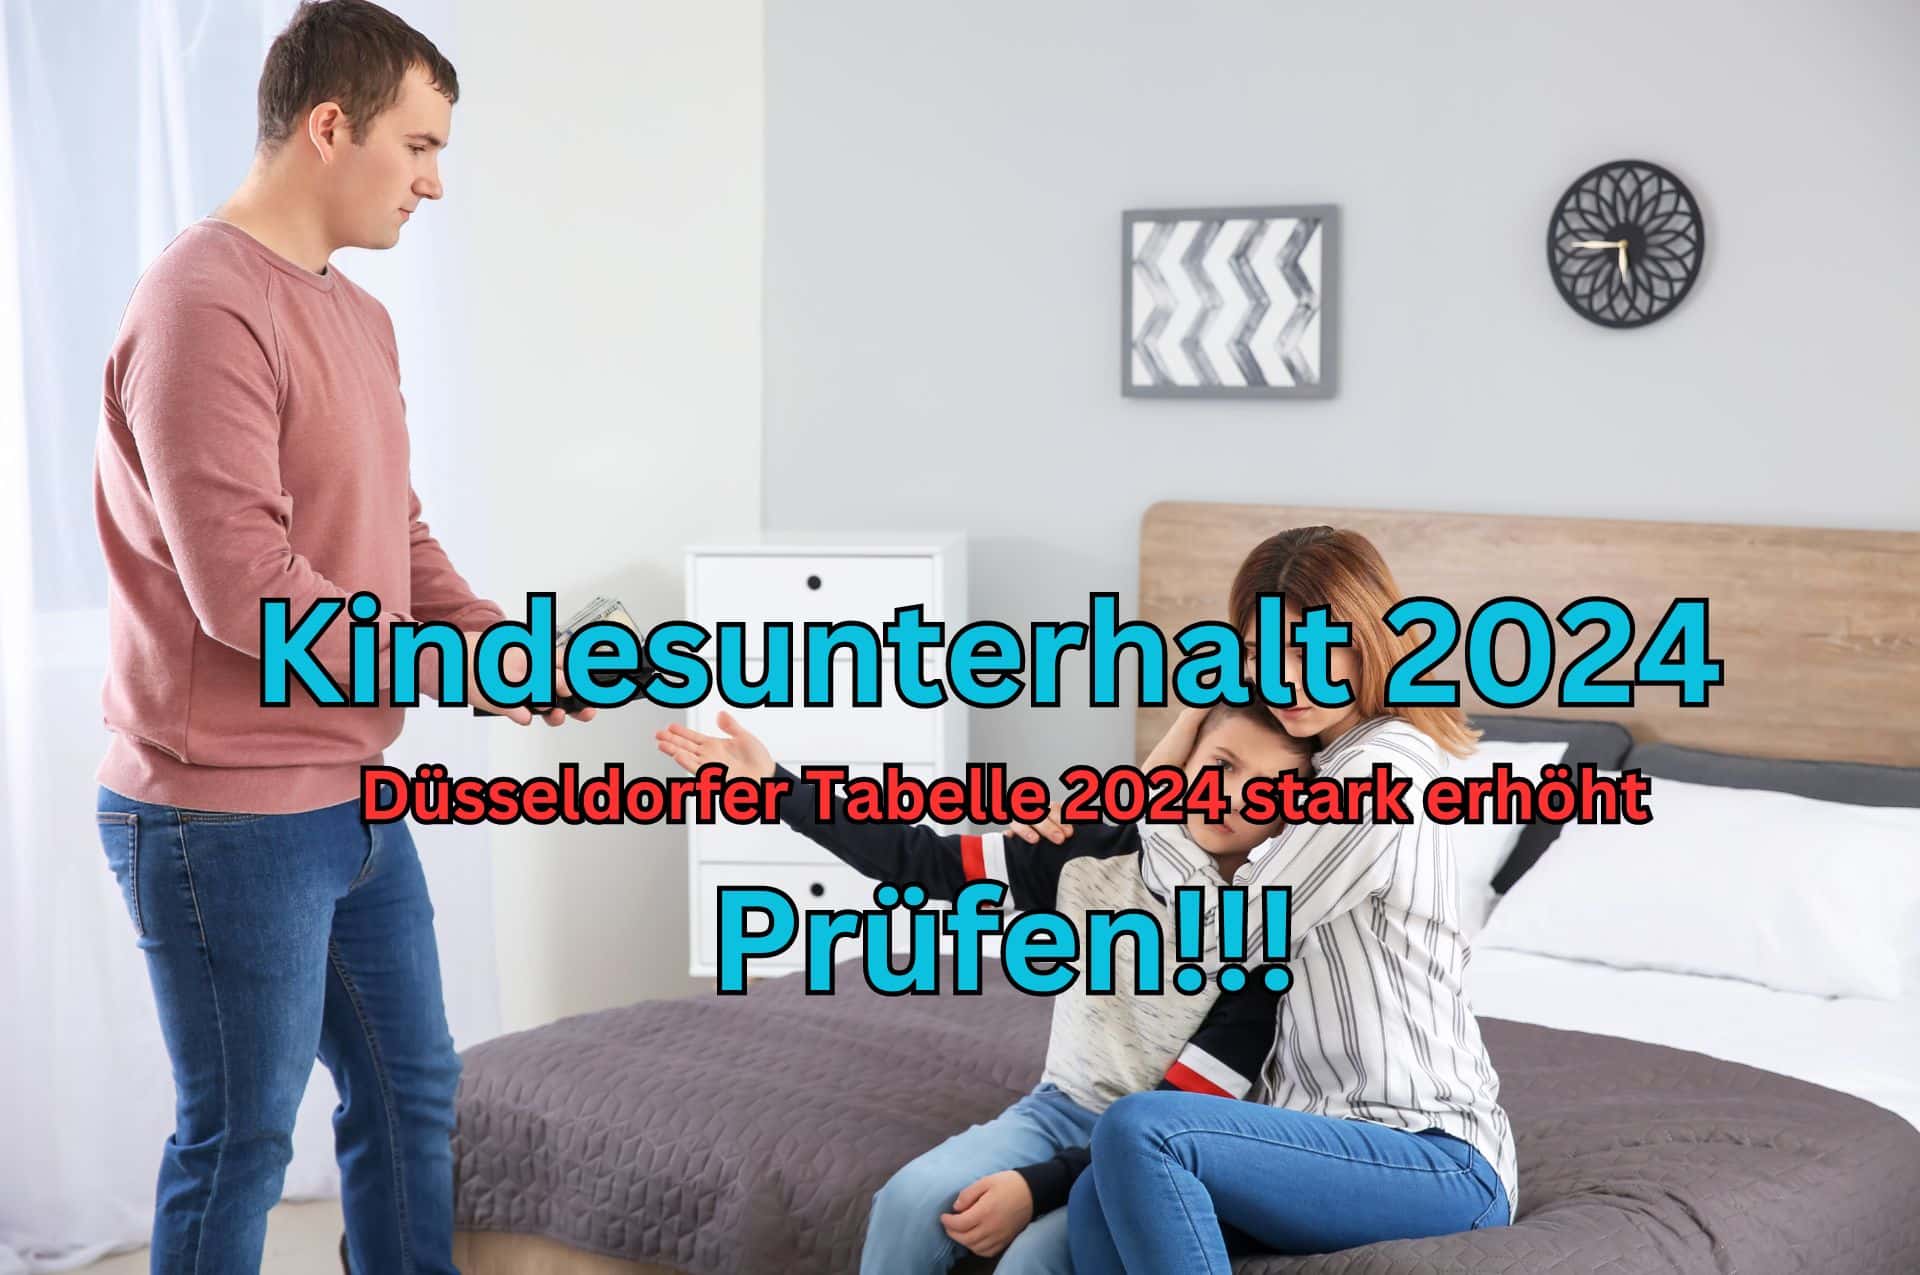 Die Düsseldorfer Tabelle 2024 hat zu einer starken Erhöhung des Kindesunterhalts 2024 geführt.